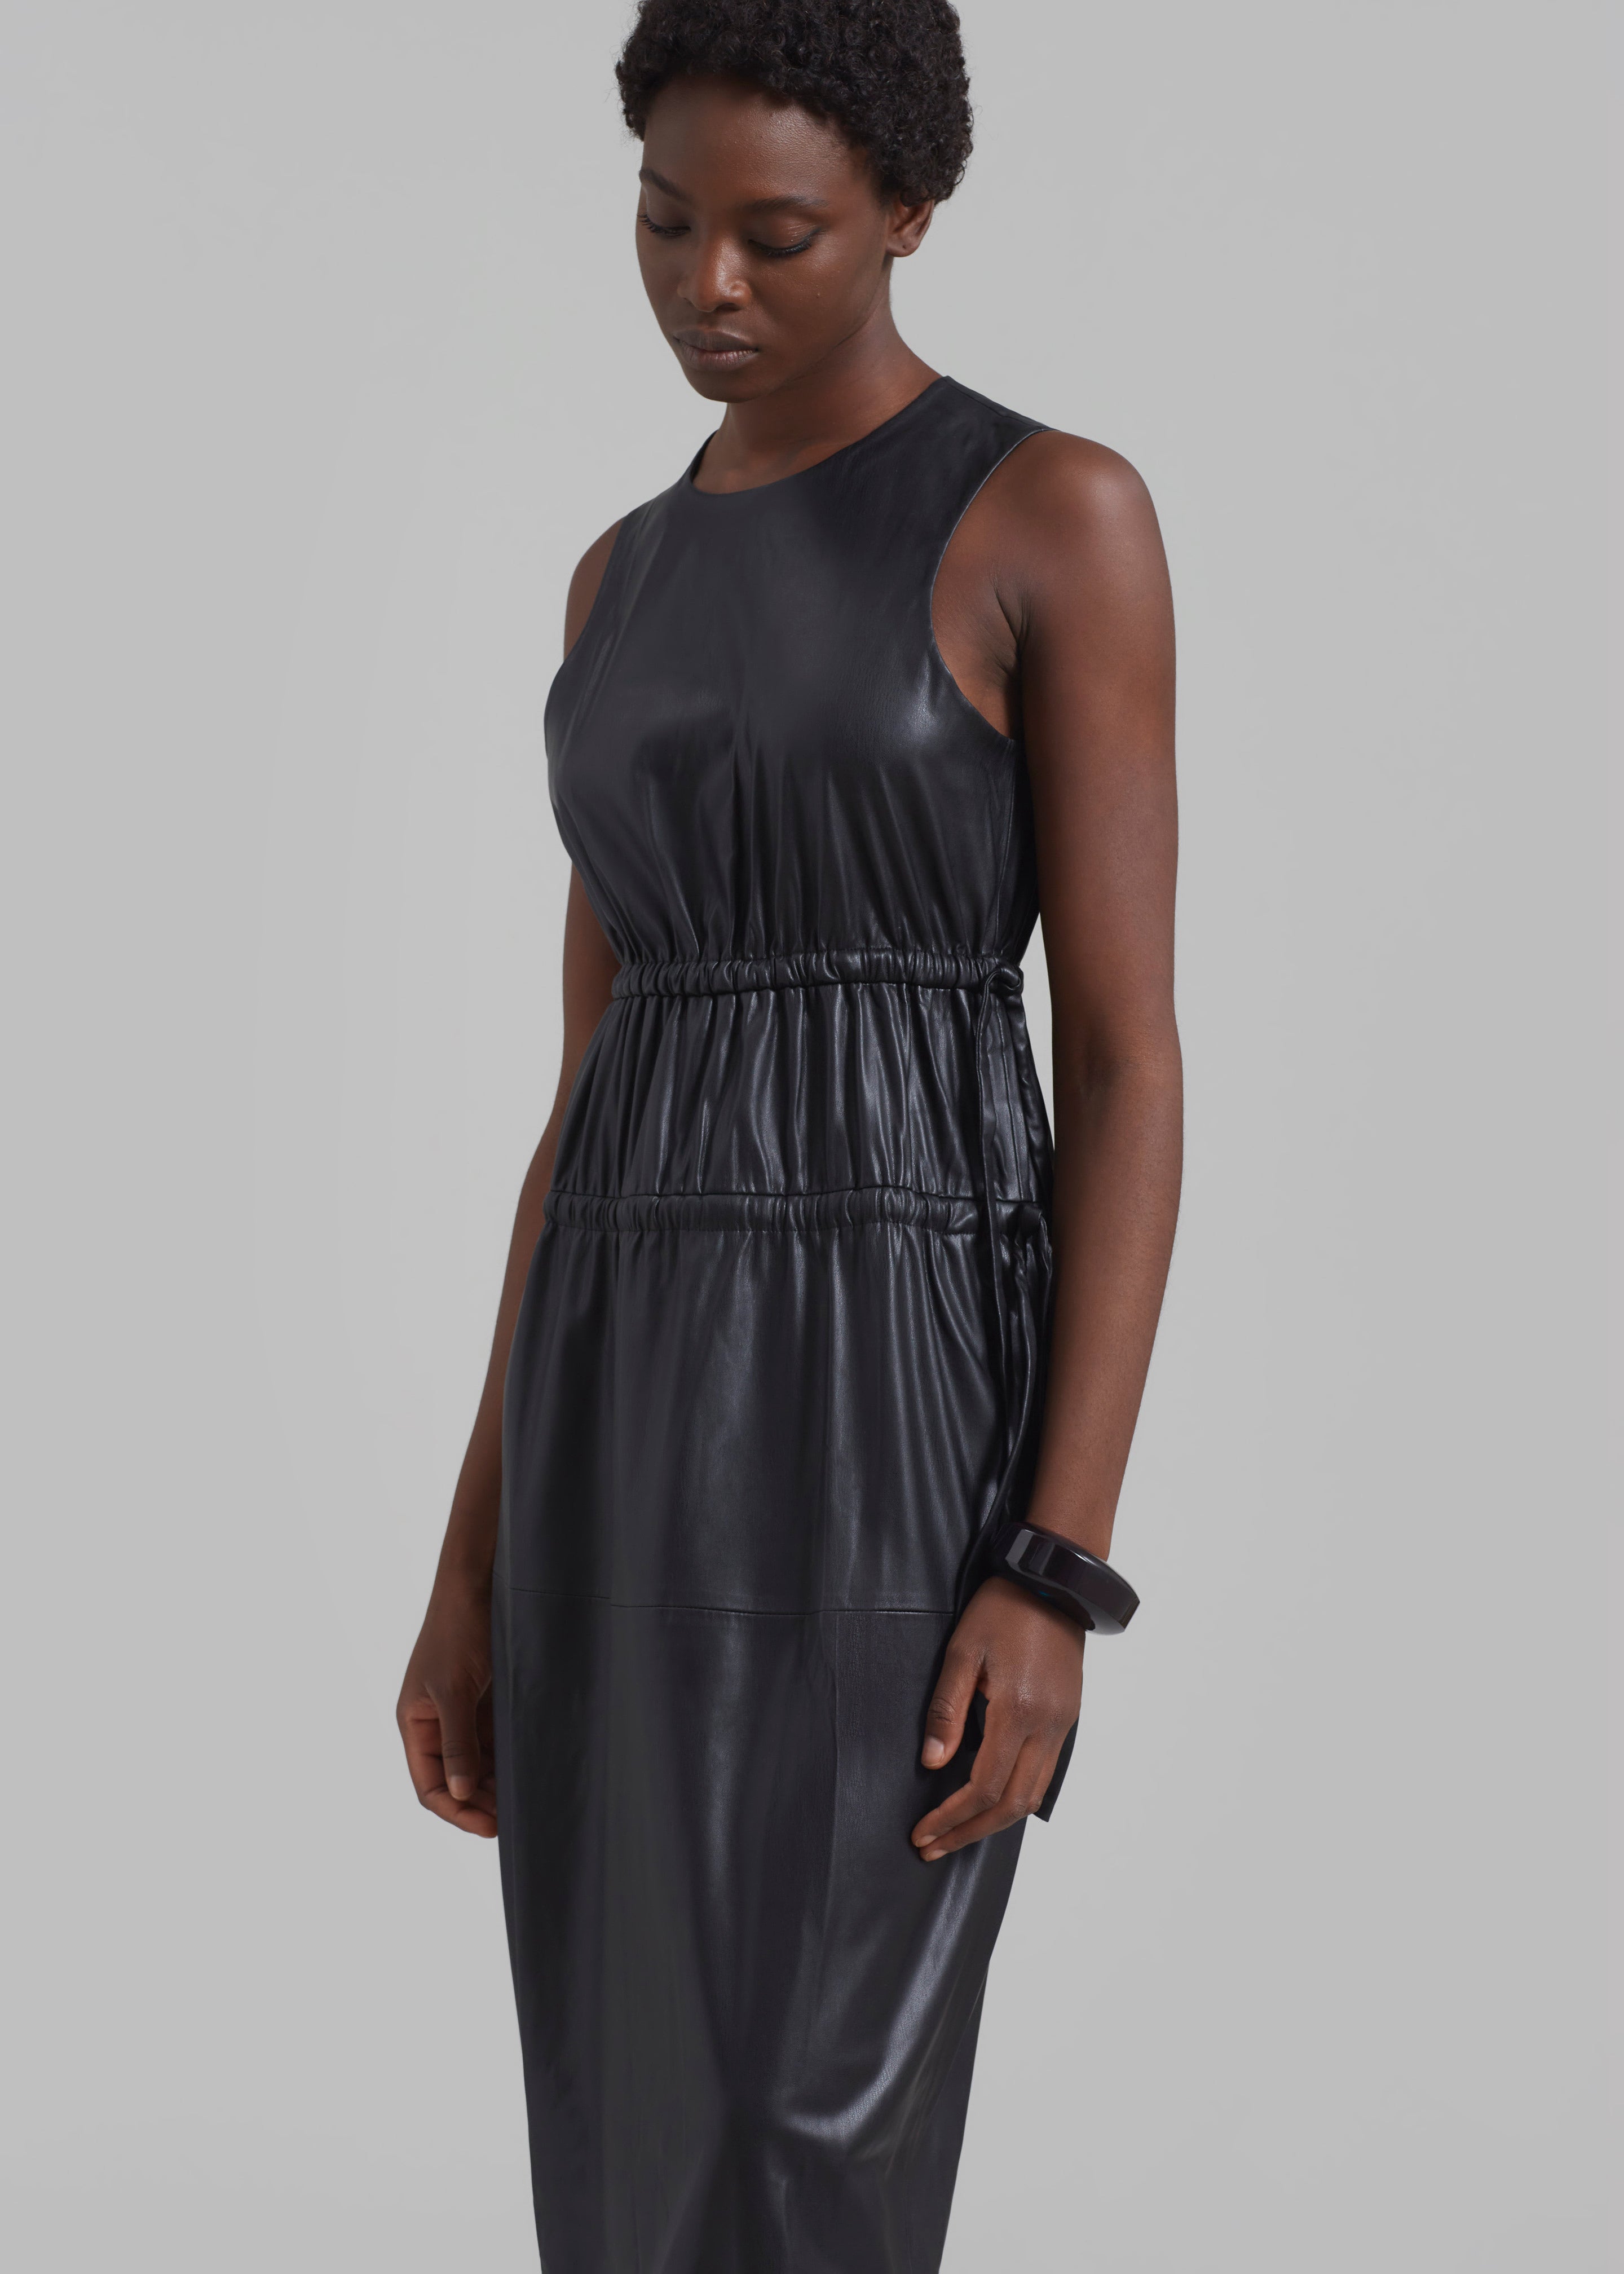 Proenza Schouler White Label Faux Leather Drawstring Dress - Black - 2